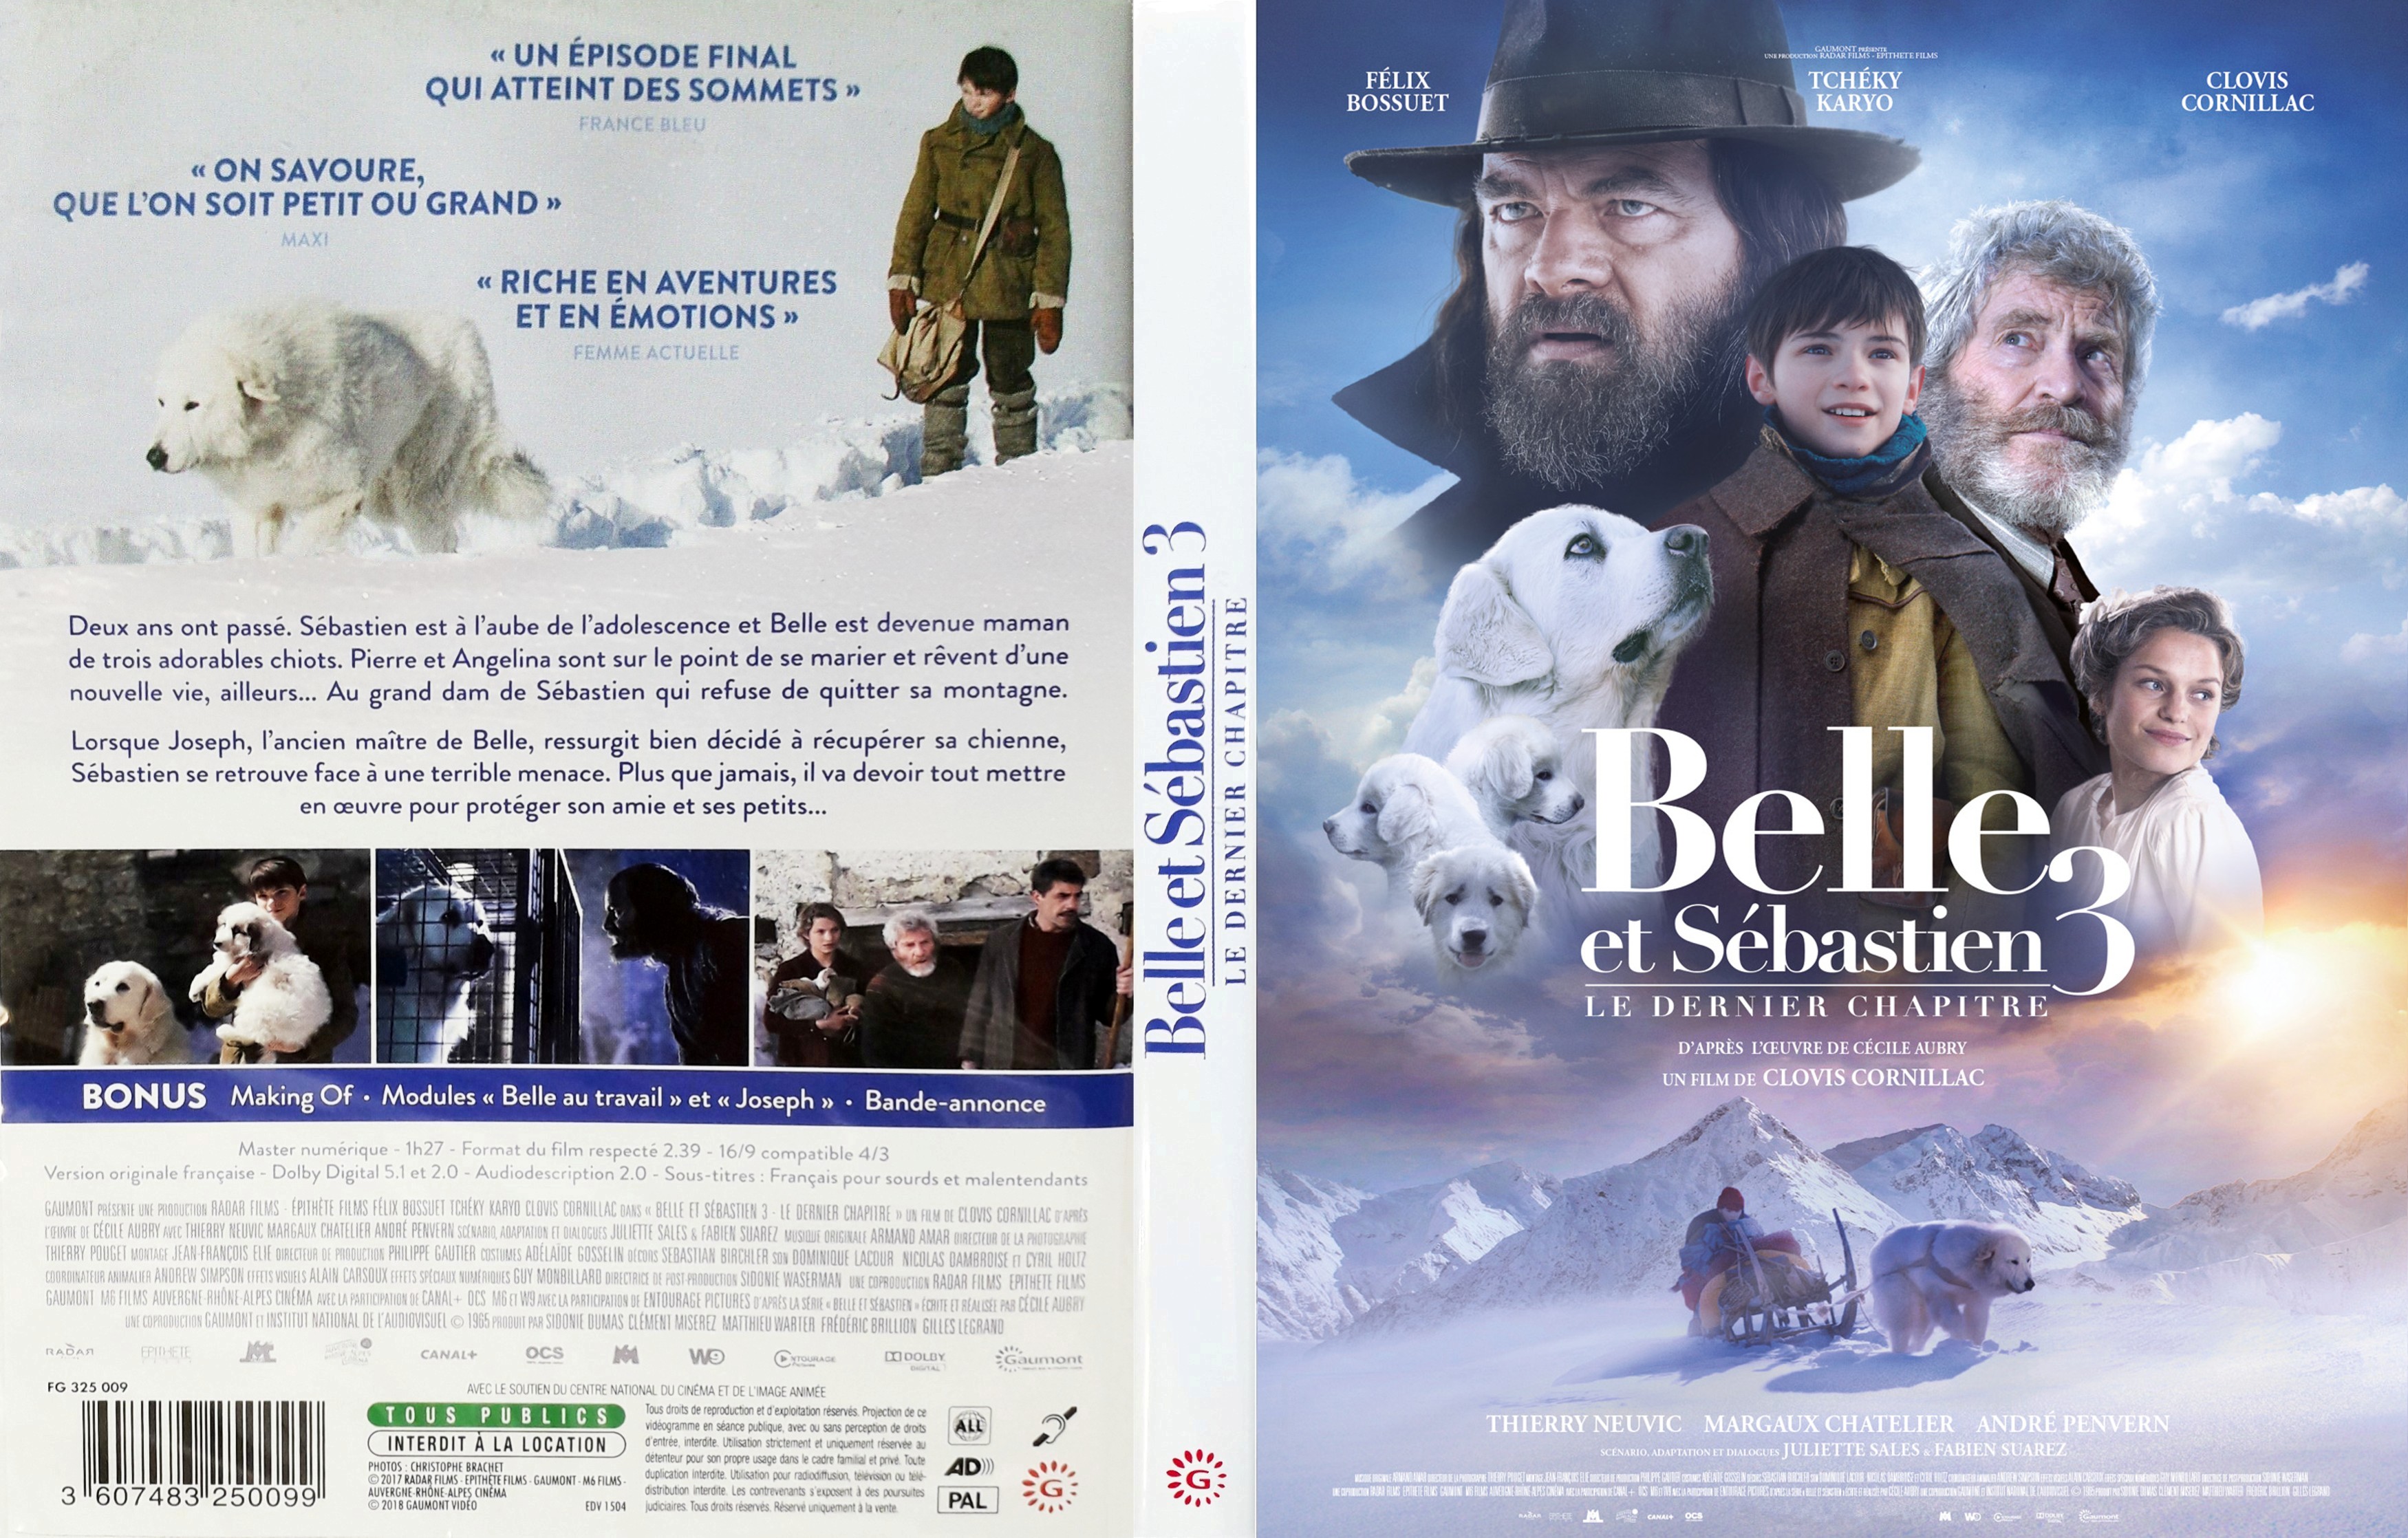 Jaquette DVD de Belle et Sebastien 3 Le dernier chapitre - Cinéma Passion